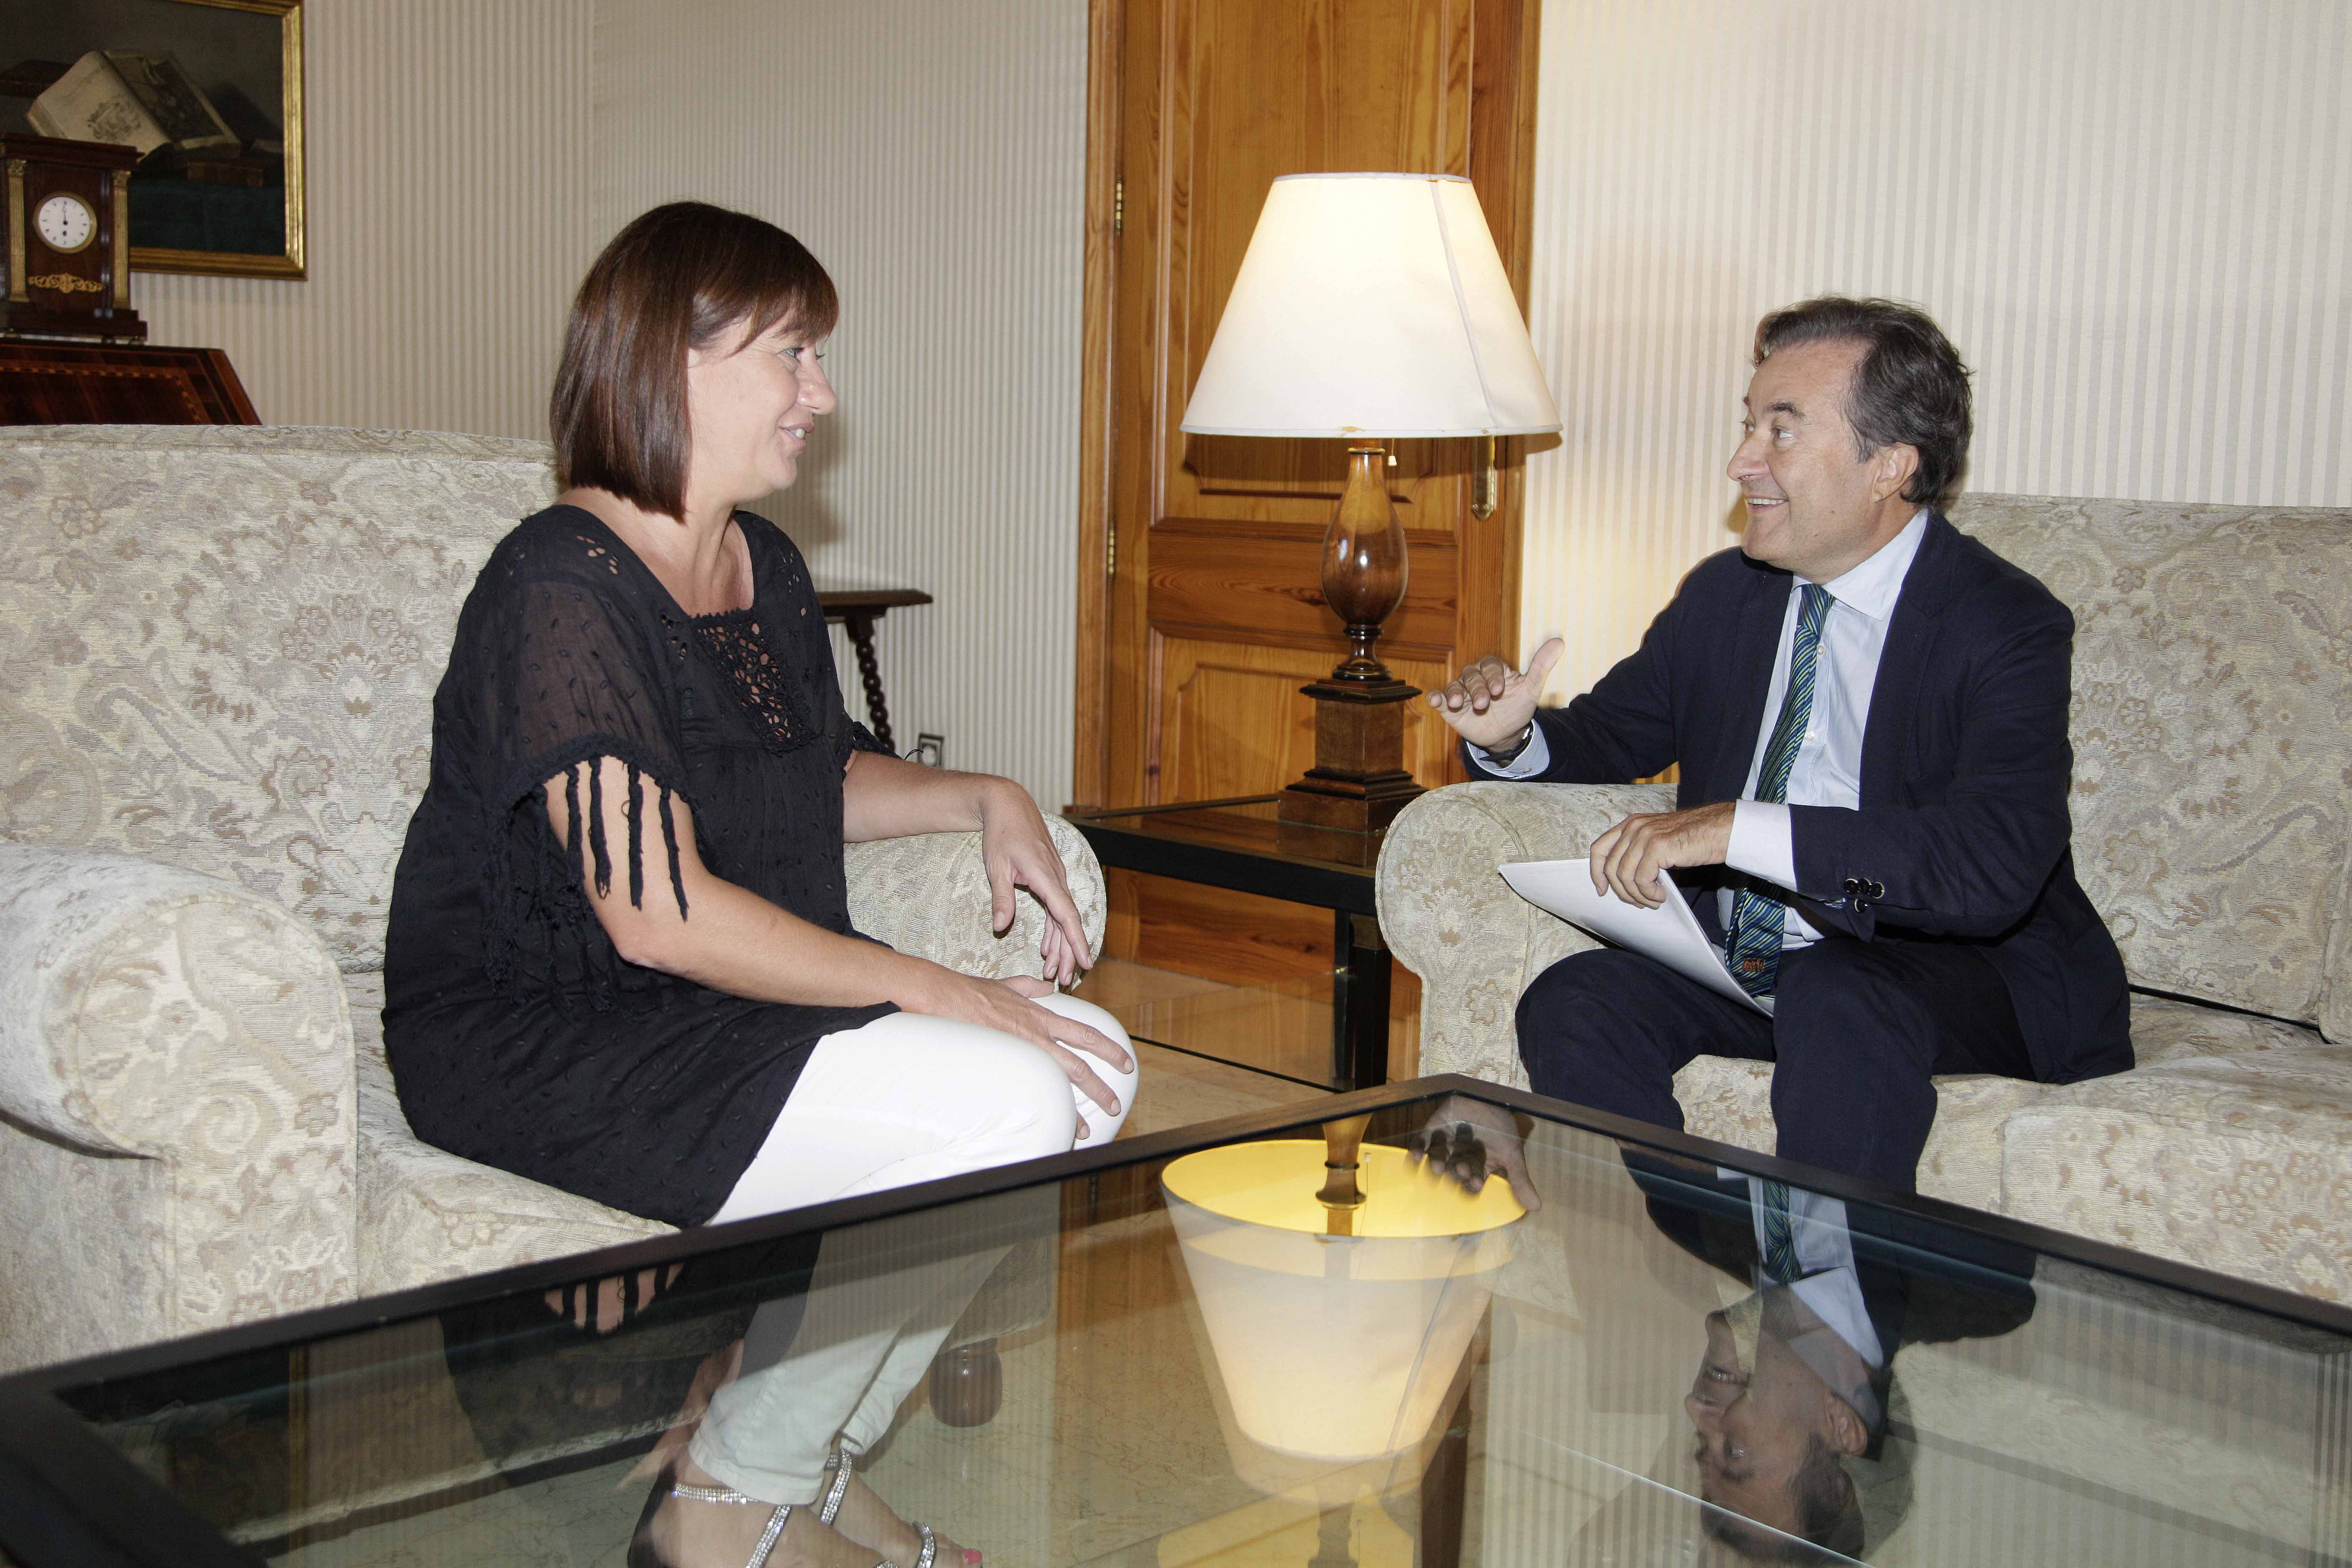 Reunió amb la presidenta del Govern de les Illes Balears, Francina Armengol